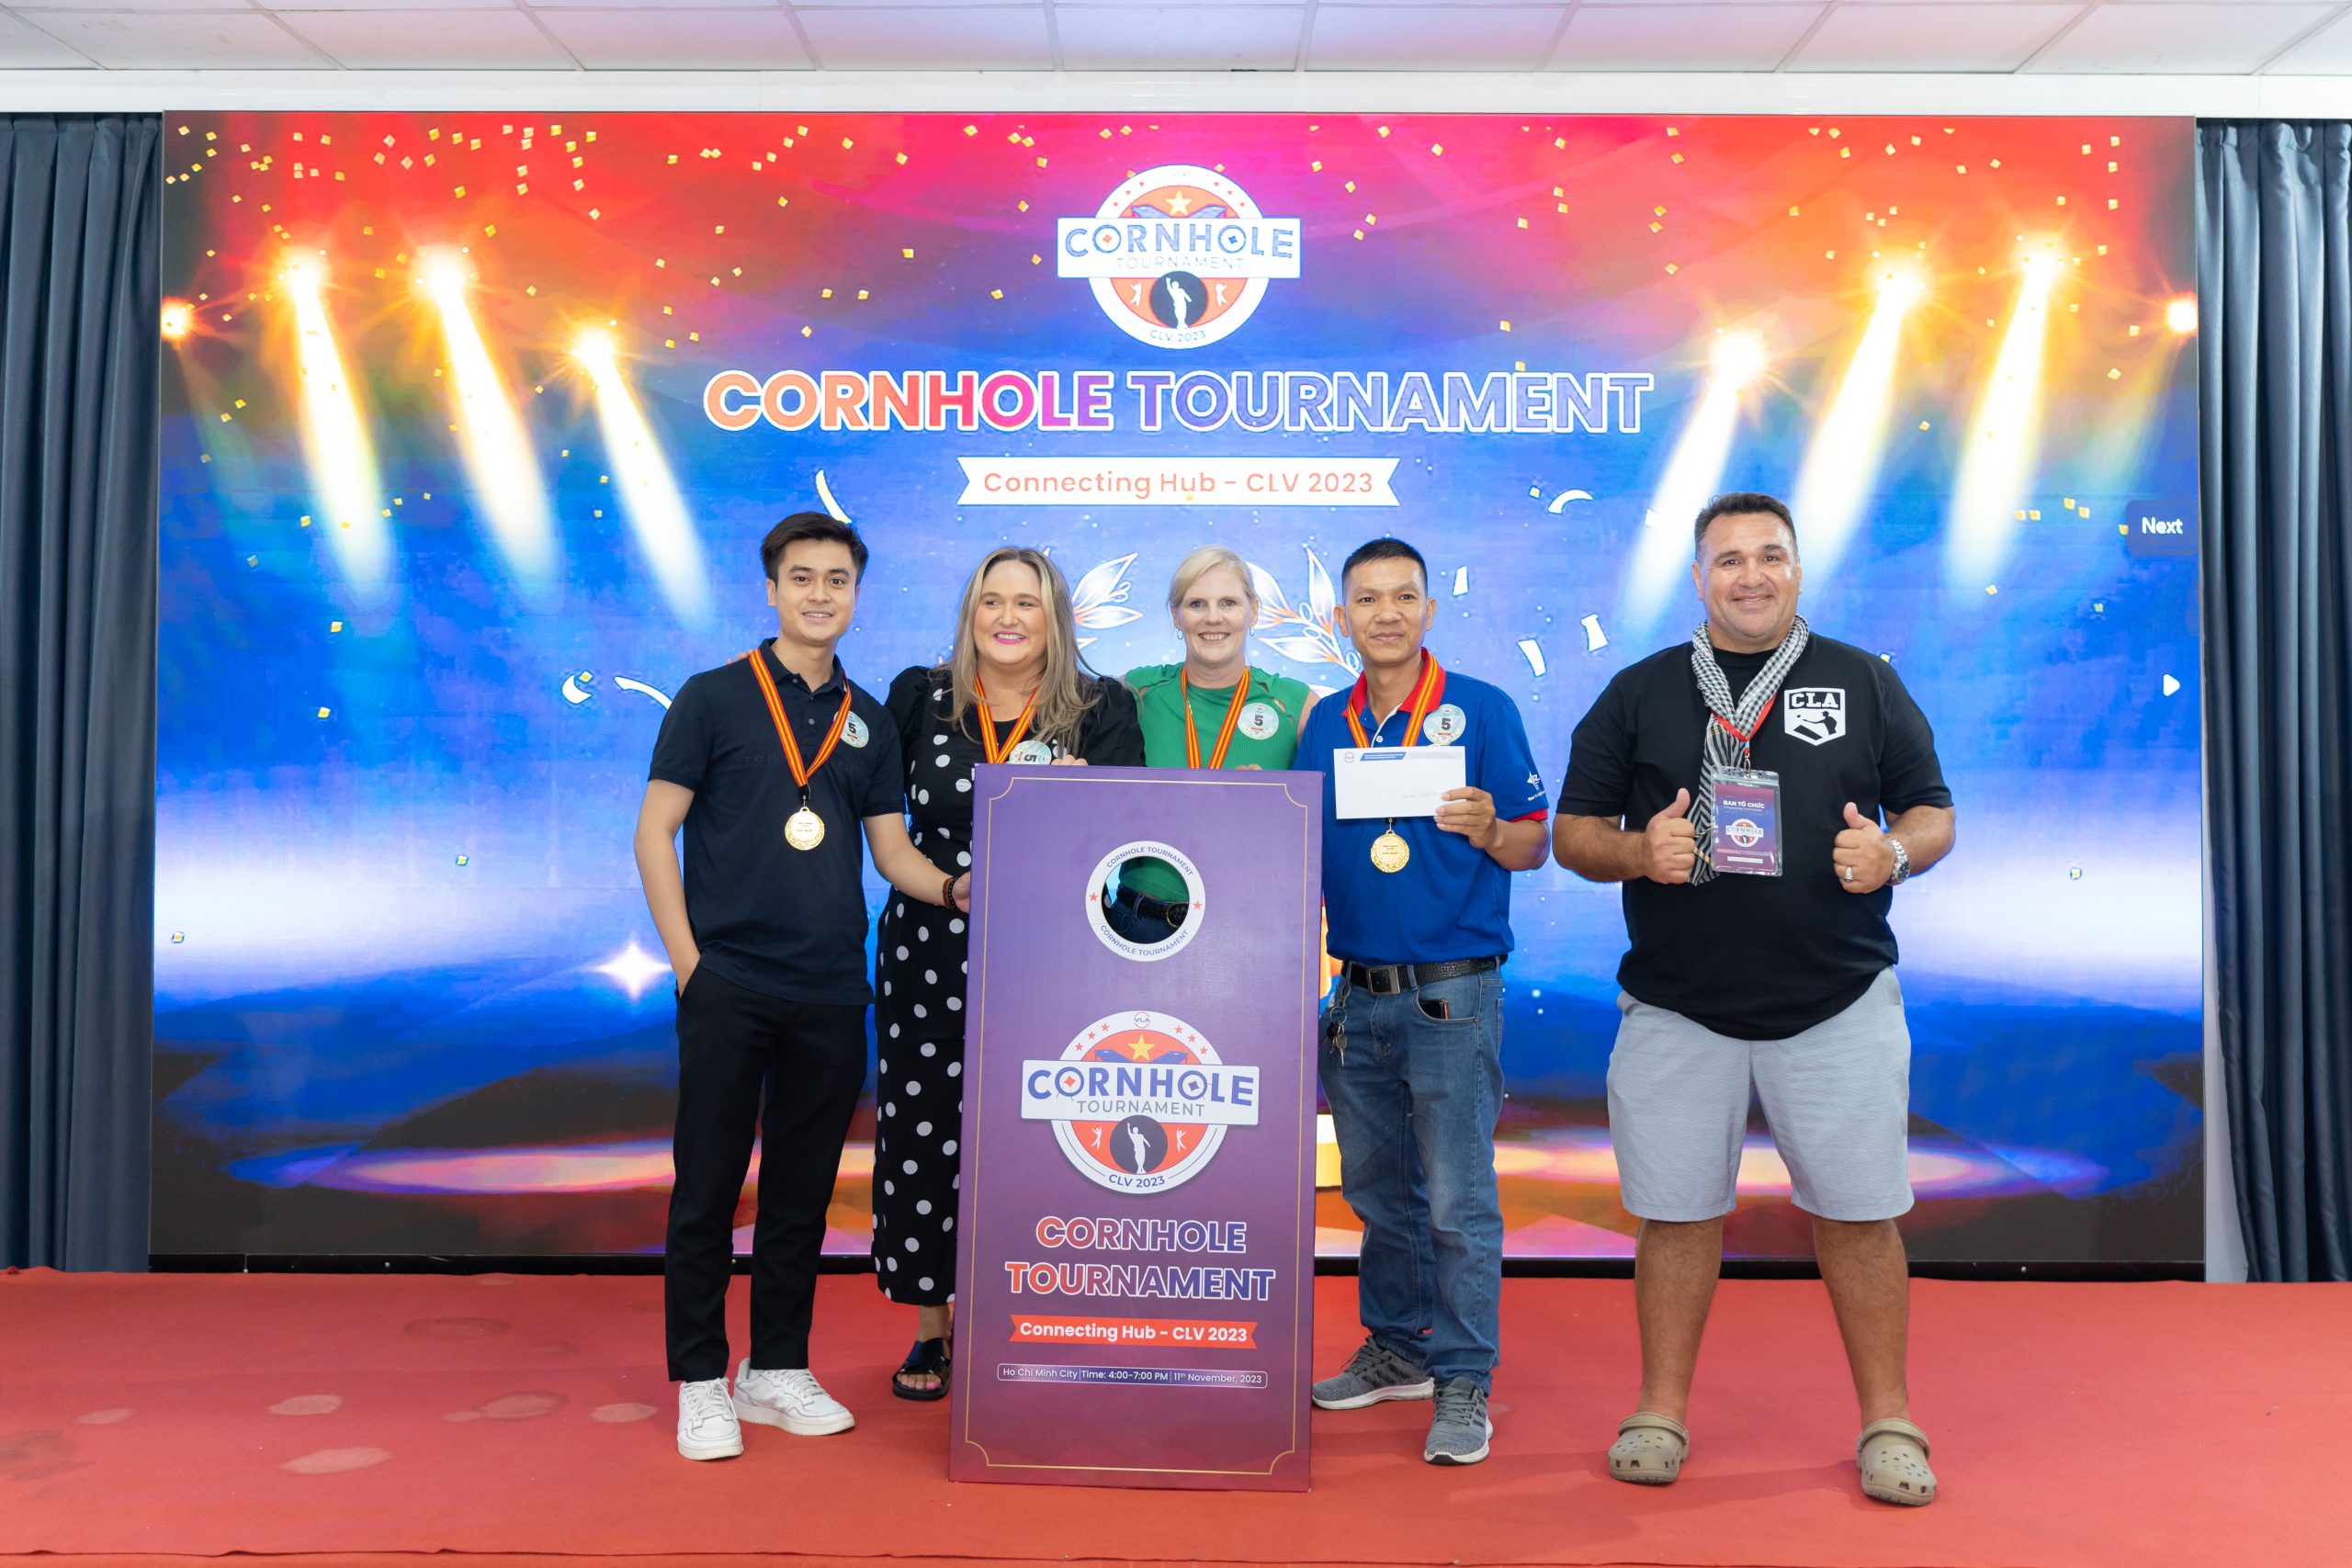 Giải nhất Cornhole Tournament - CLV 2023 là Team 5